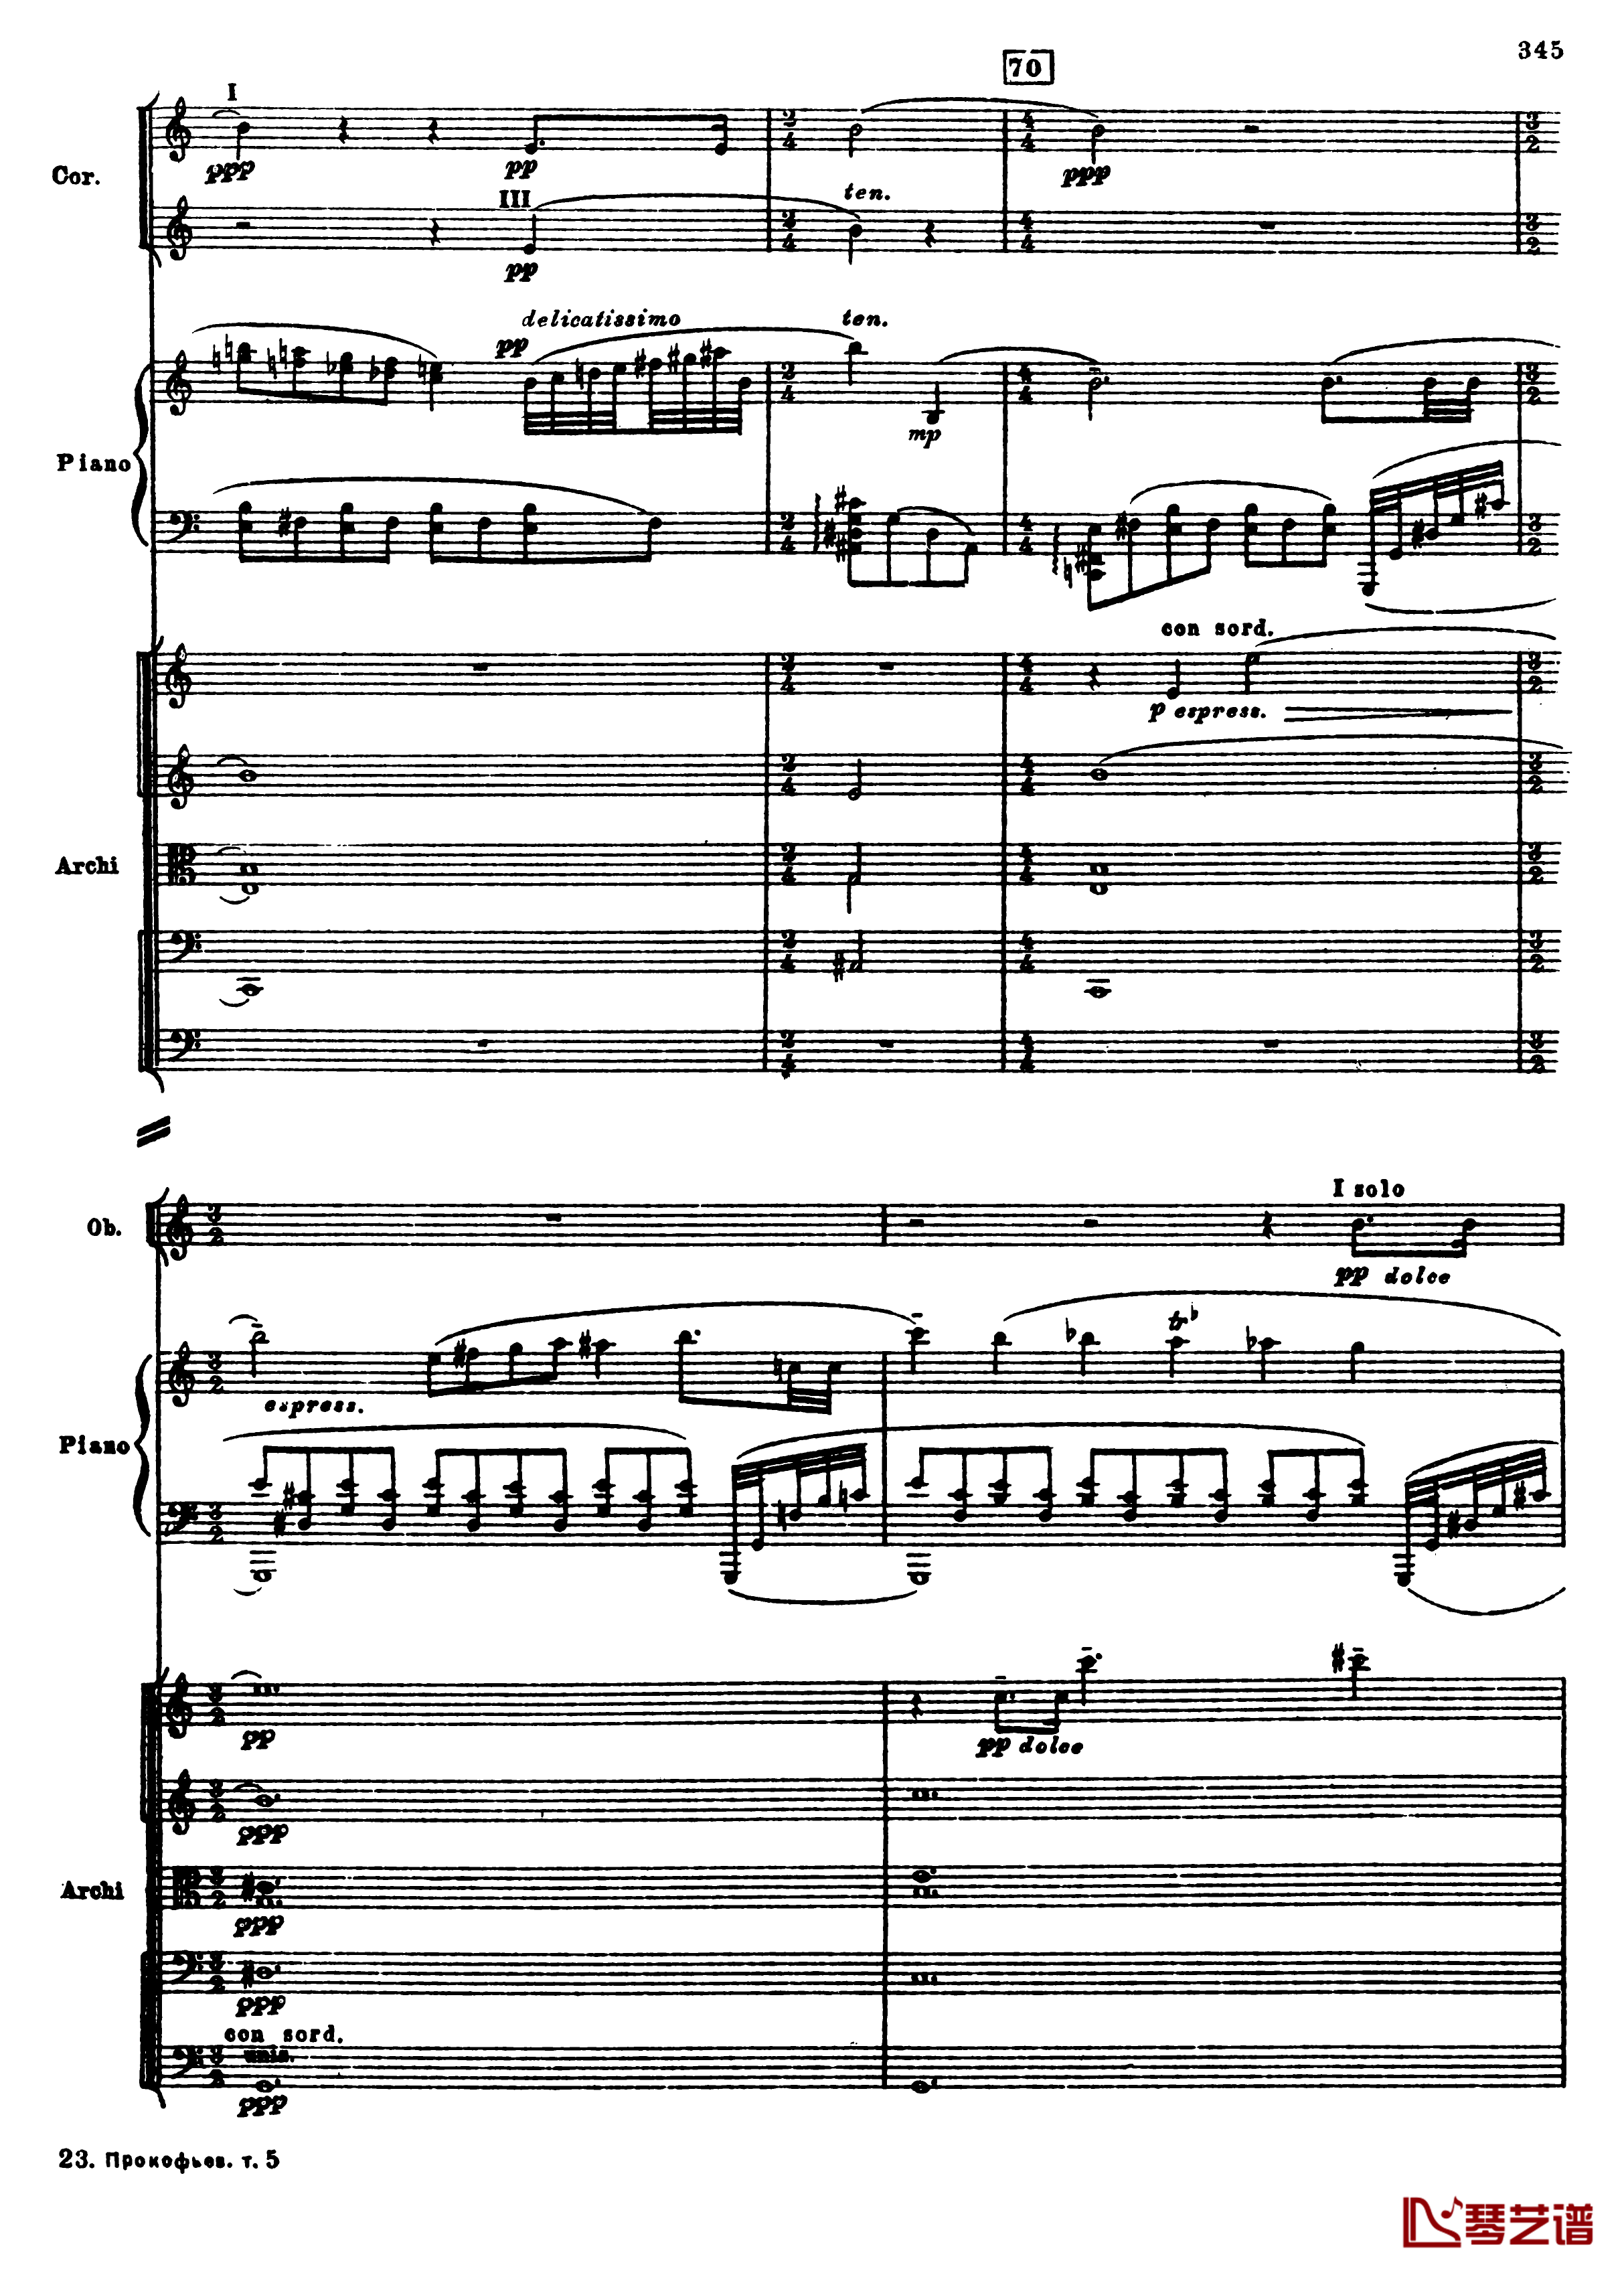 普罗科菲耶夫第三钢琴协奏曲钢琴谱-总谱-普罗科非耶夫77